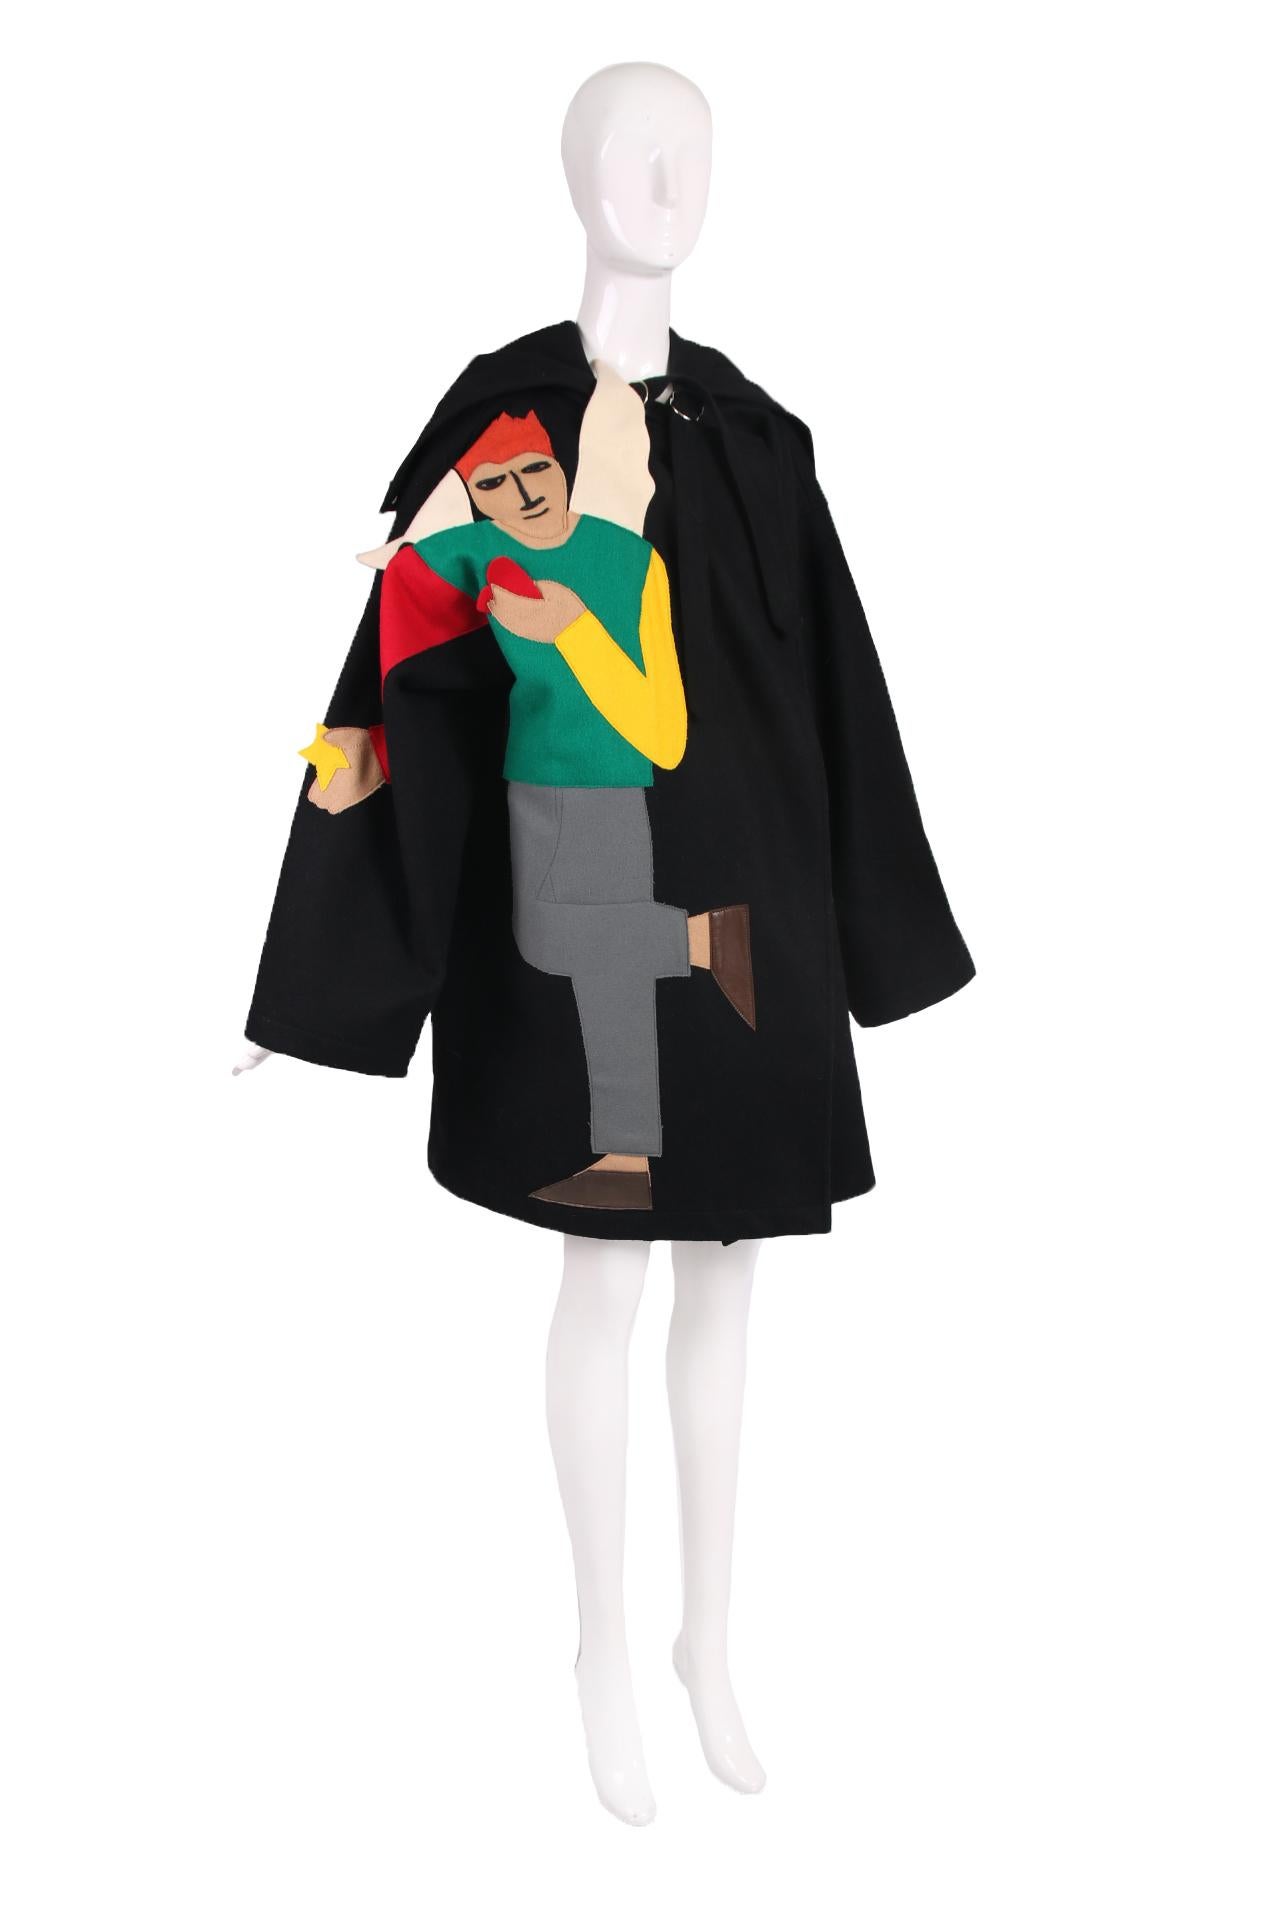 Rare manteau oversize en laine melton noire de Jean-Charles de Castelbajac Ko and Co représentant un homme roux et ailé portant des chaussons en cuir et tenant un cœur rouge dans une main et une étoile jaune dans l'autre. Il a des poches latérales